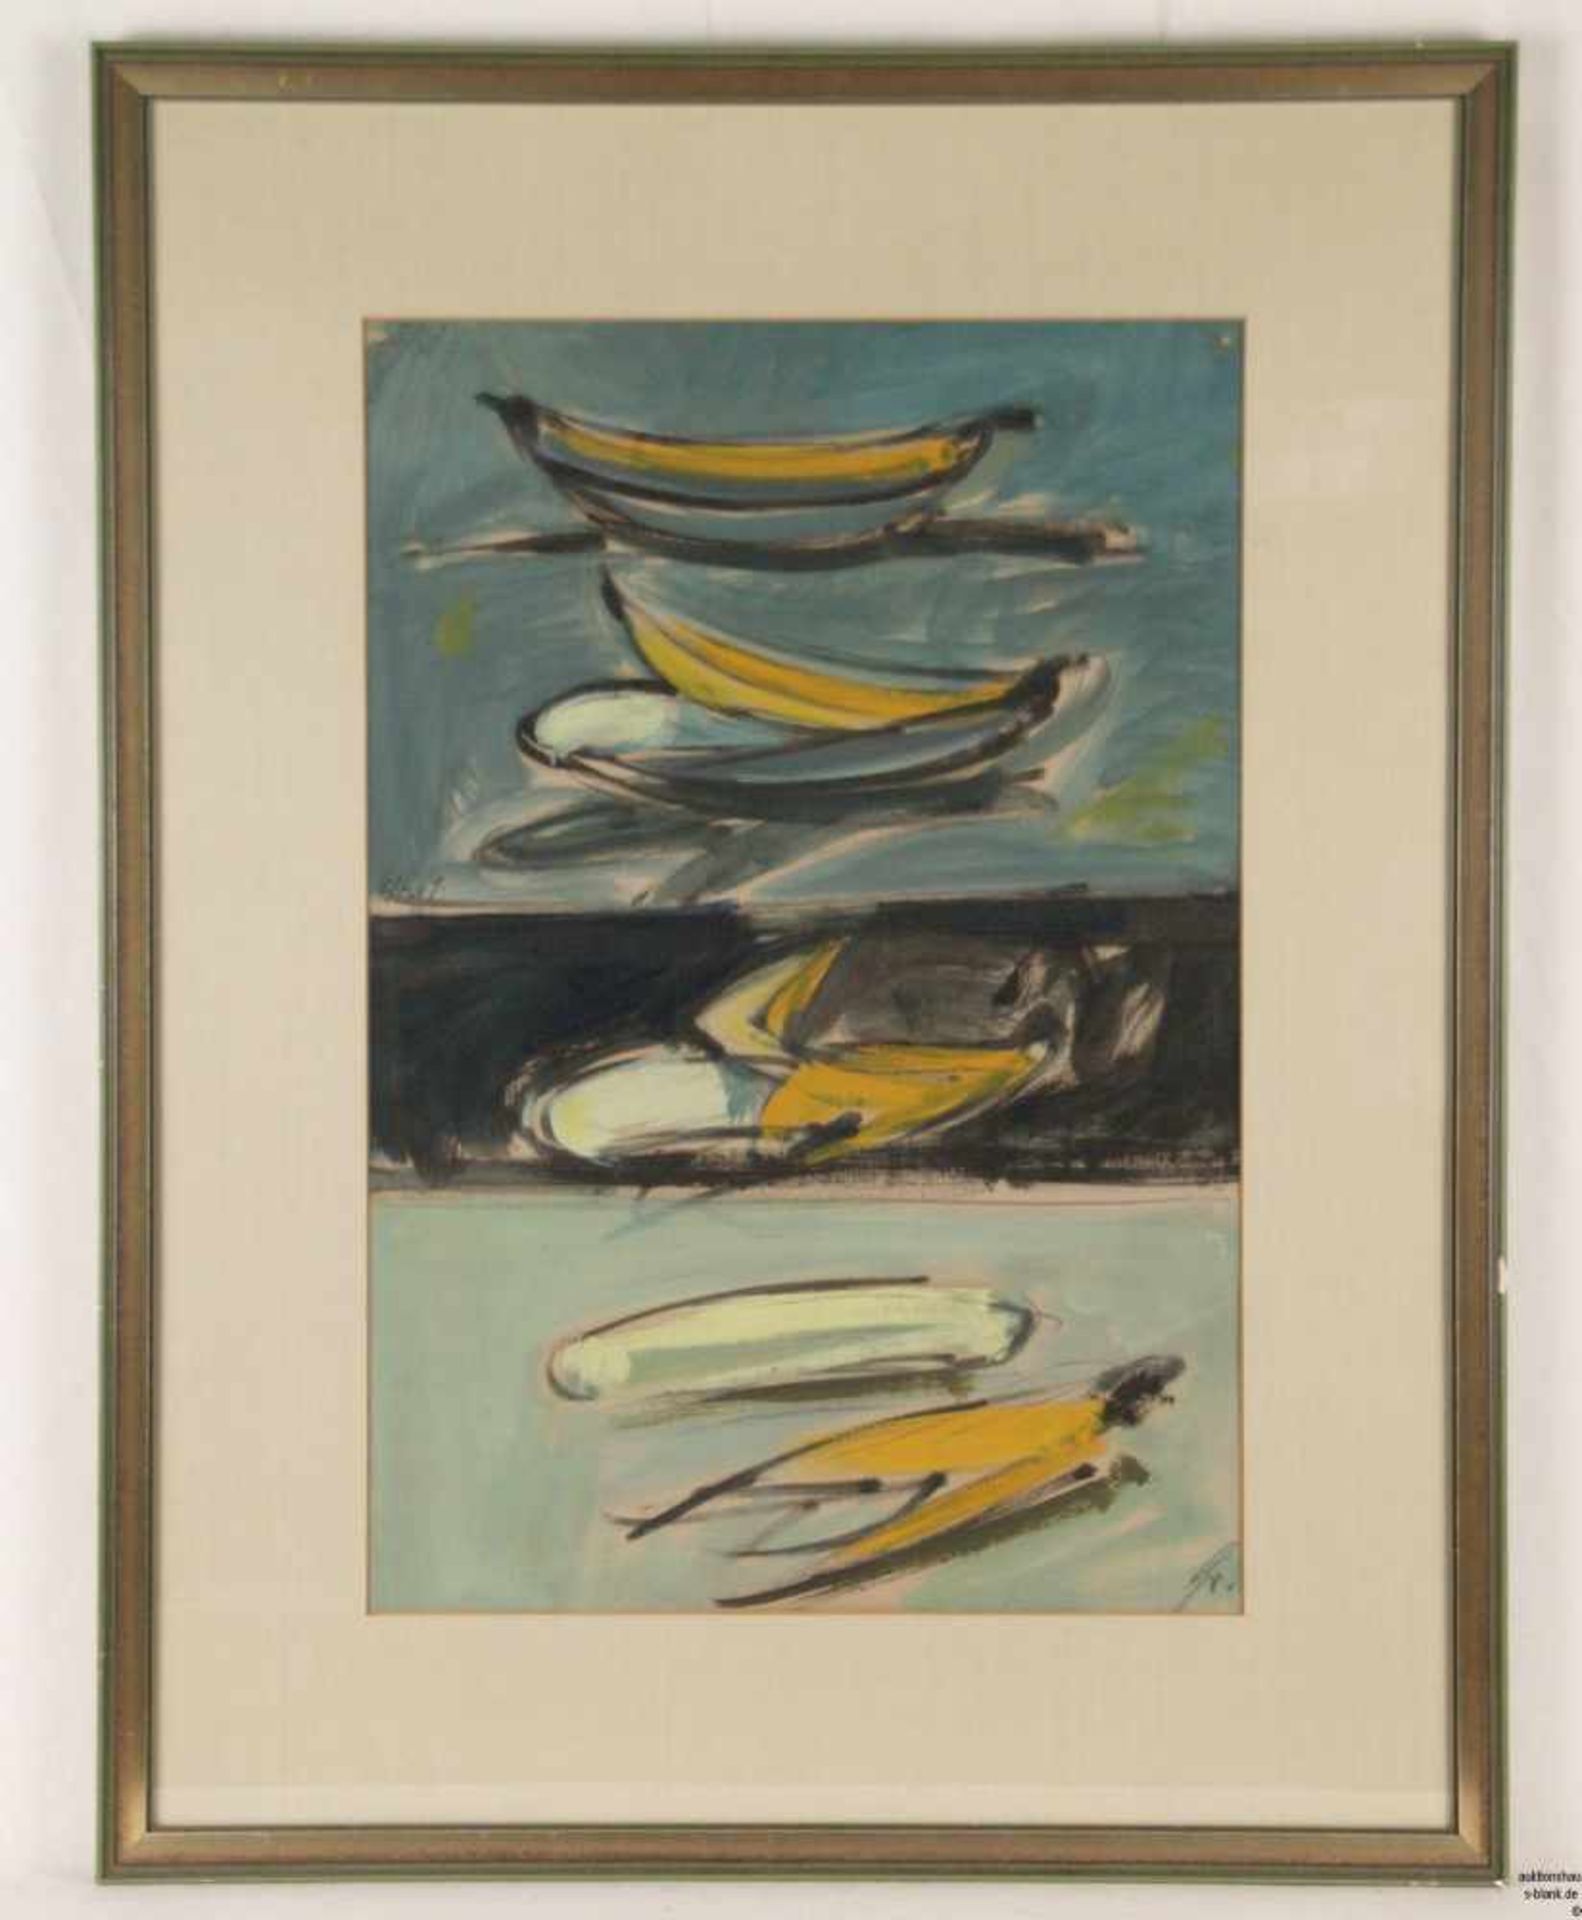 Monogrammist - 'Bananenstudie', Mischtechnik, unten rechts monogrammiert 'Gr.', links in der Mitte - Bild 2 aus 6